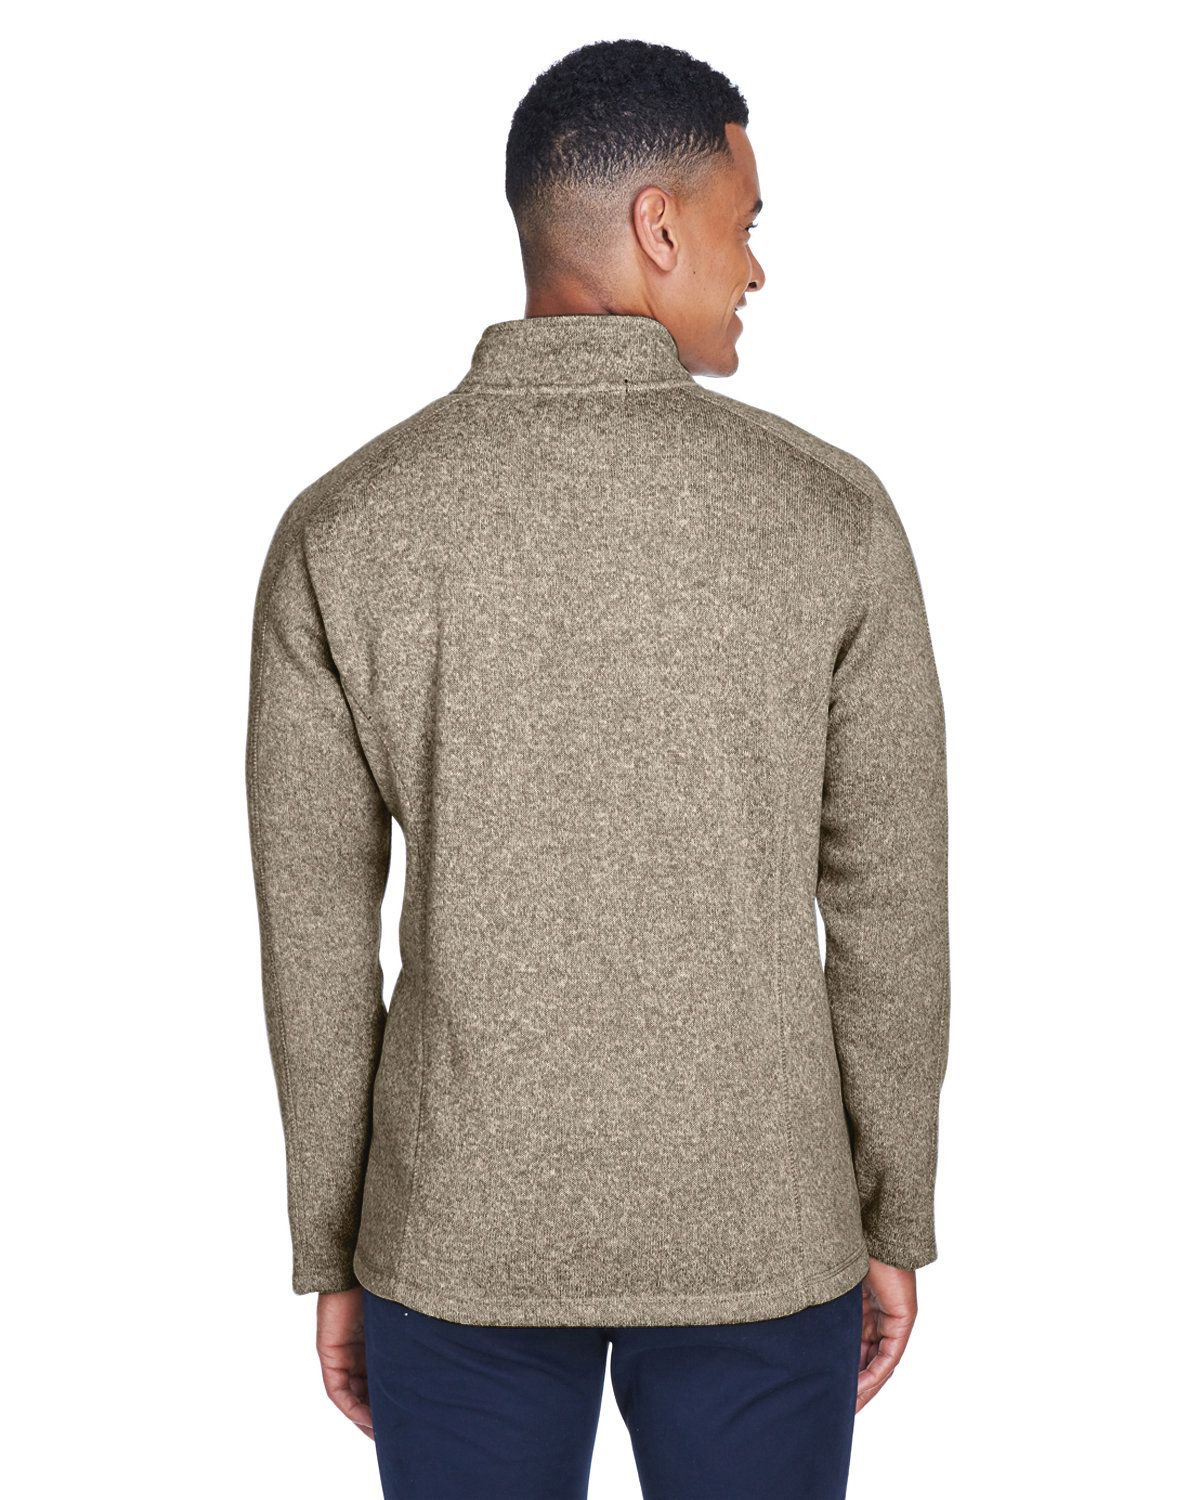 Devon & Jones DG793 Men's Bristol Full-Zip Sweater Fleece  Jacket